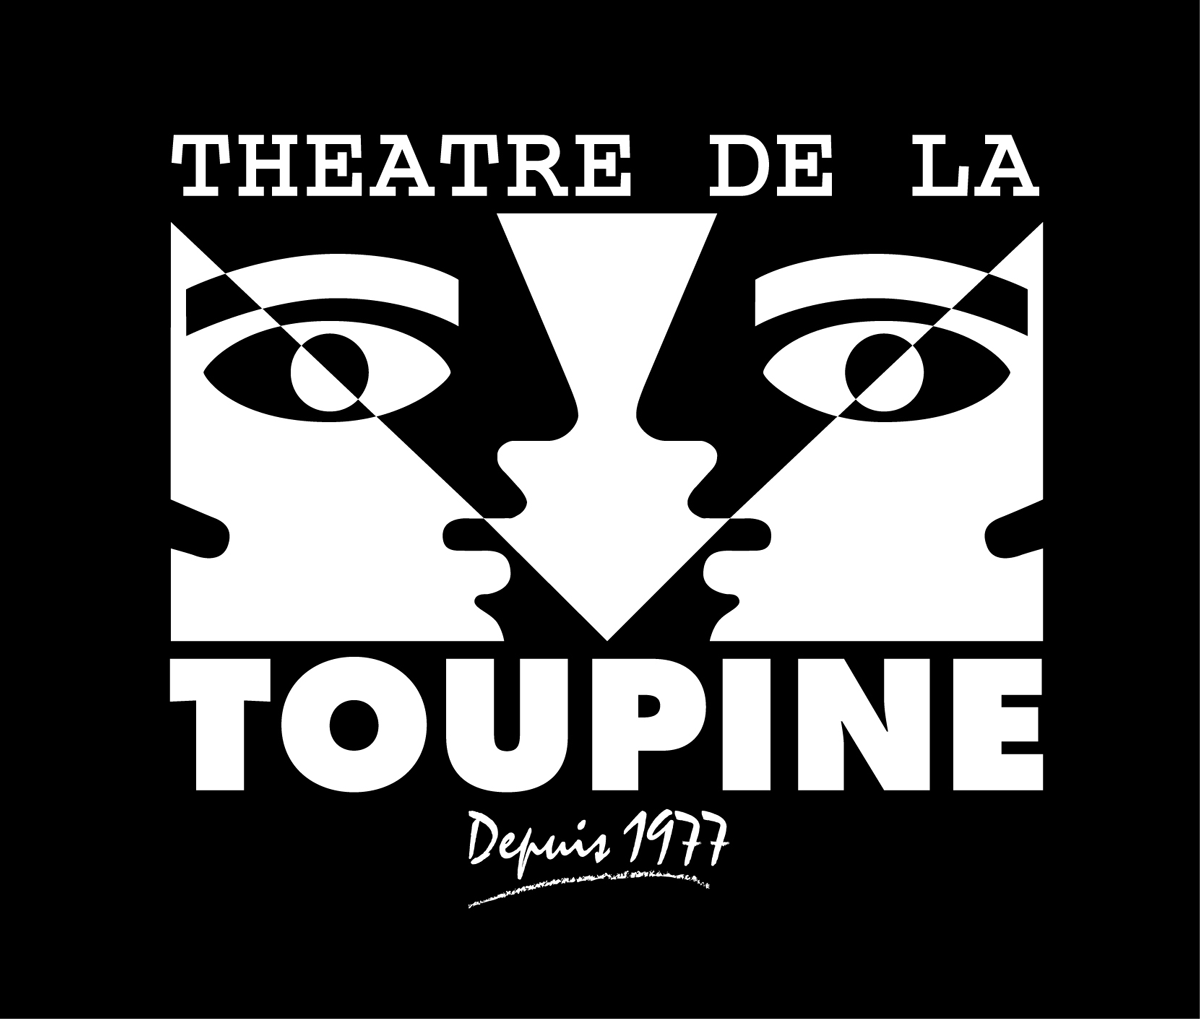 théâtre de la Toupine, partenaire des flottins